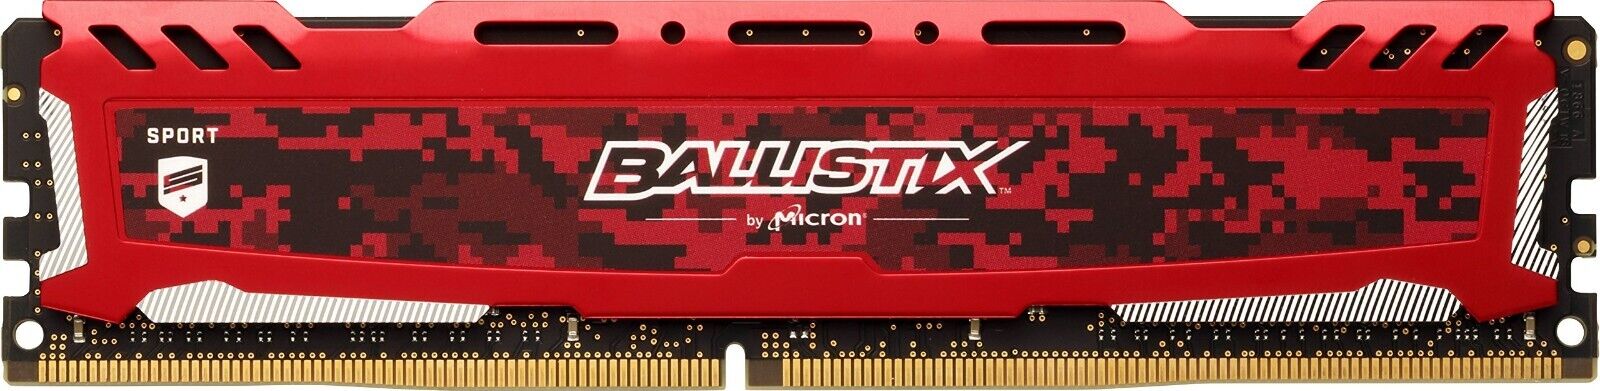 Crucial BALLISTIX SPORT 8GB (4GBx2) DDR4 2400MHz RAM (BLS4G4D240FSE.8FBD)